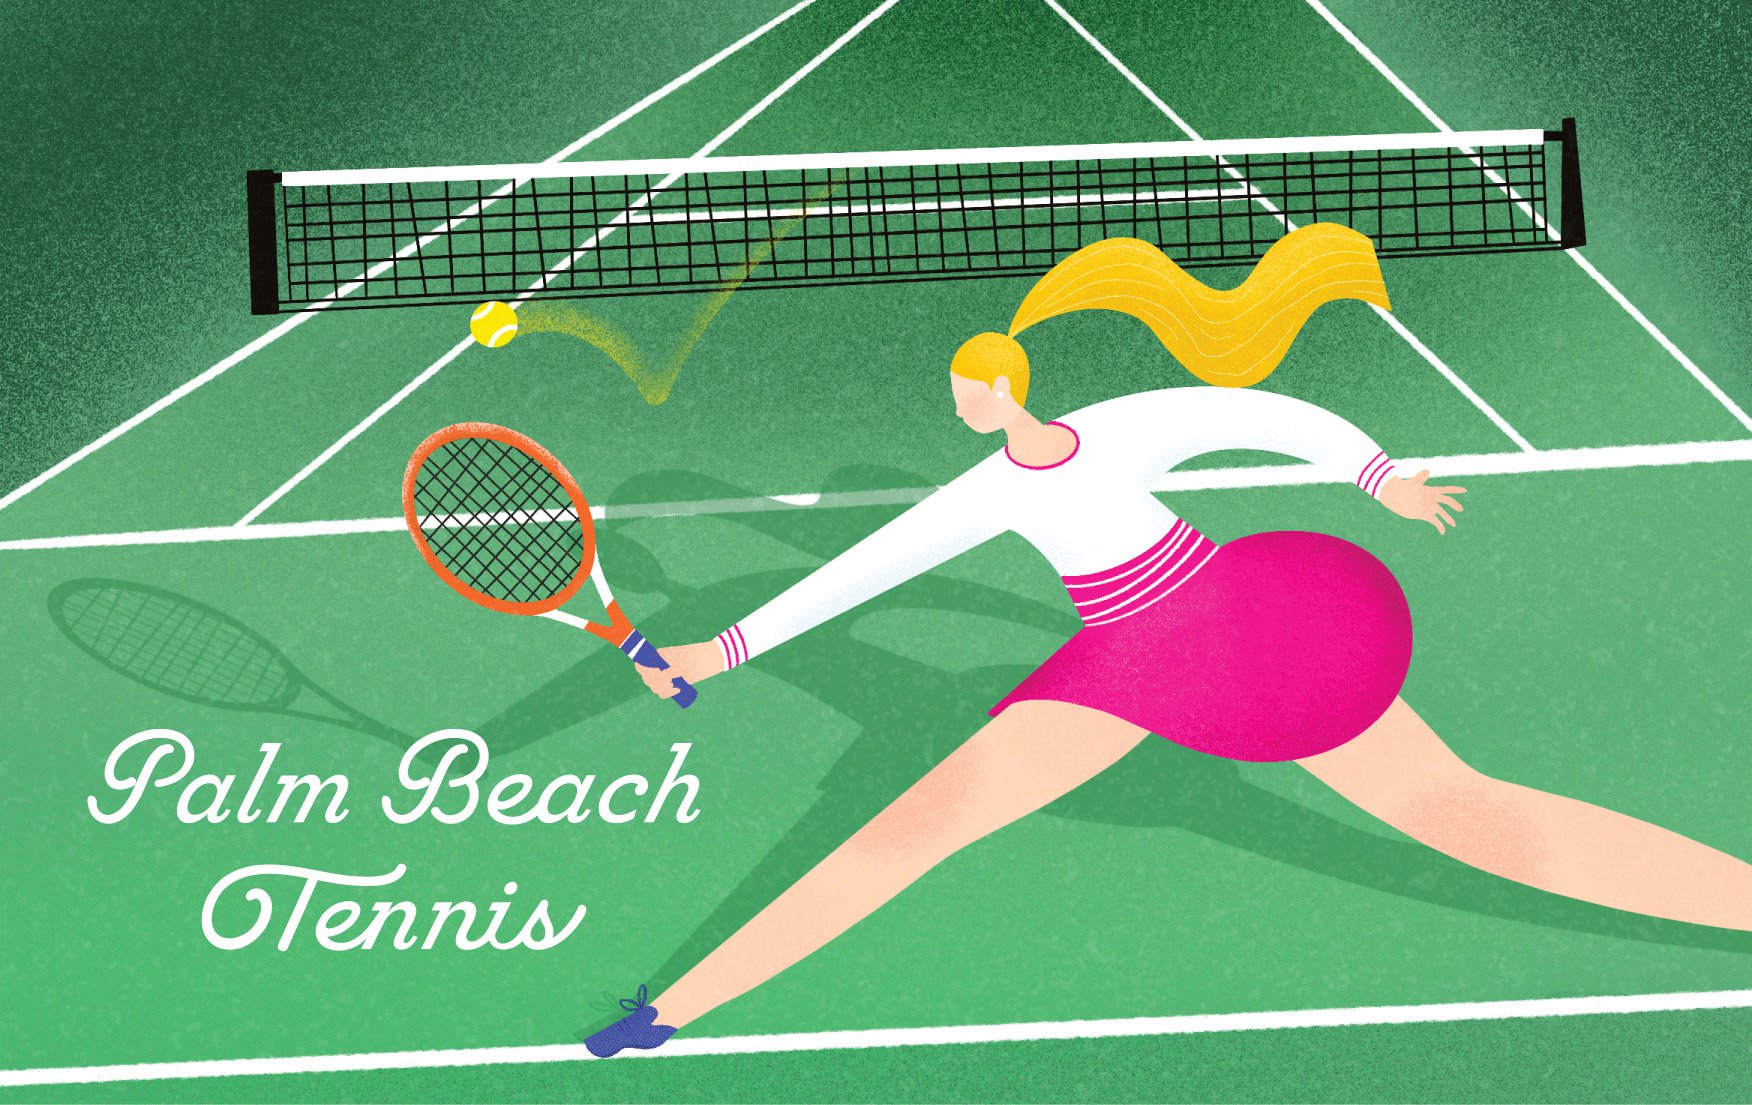 Palm Beach Tennis